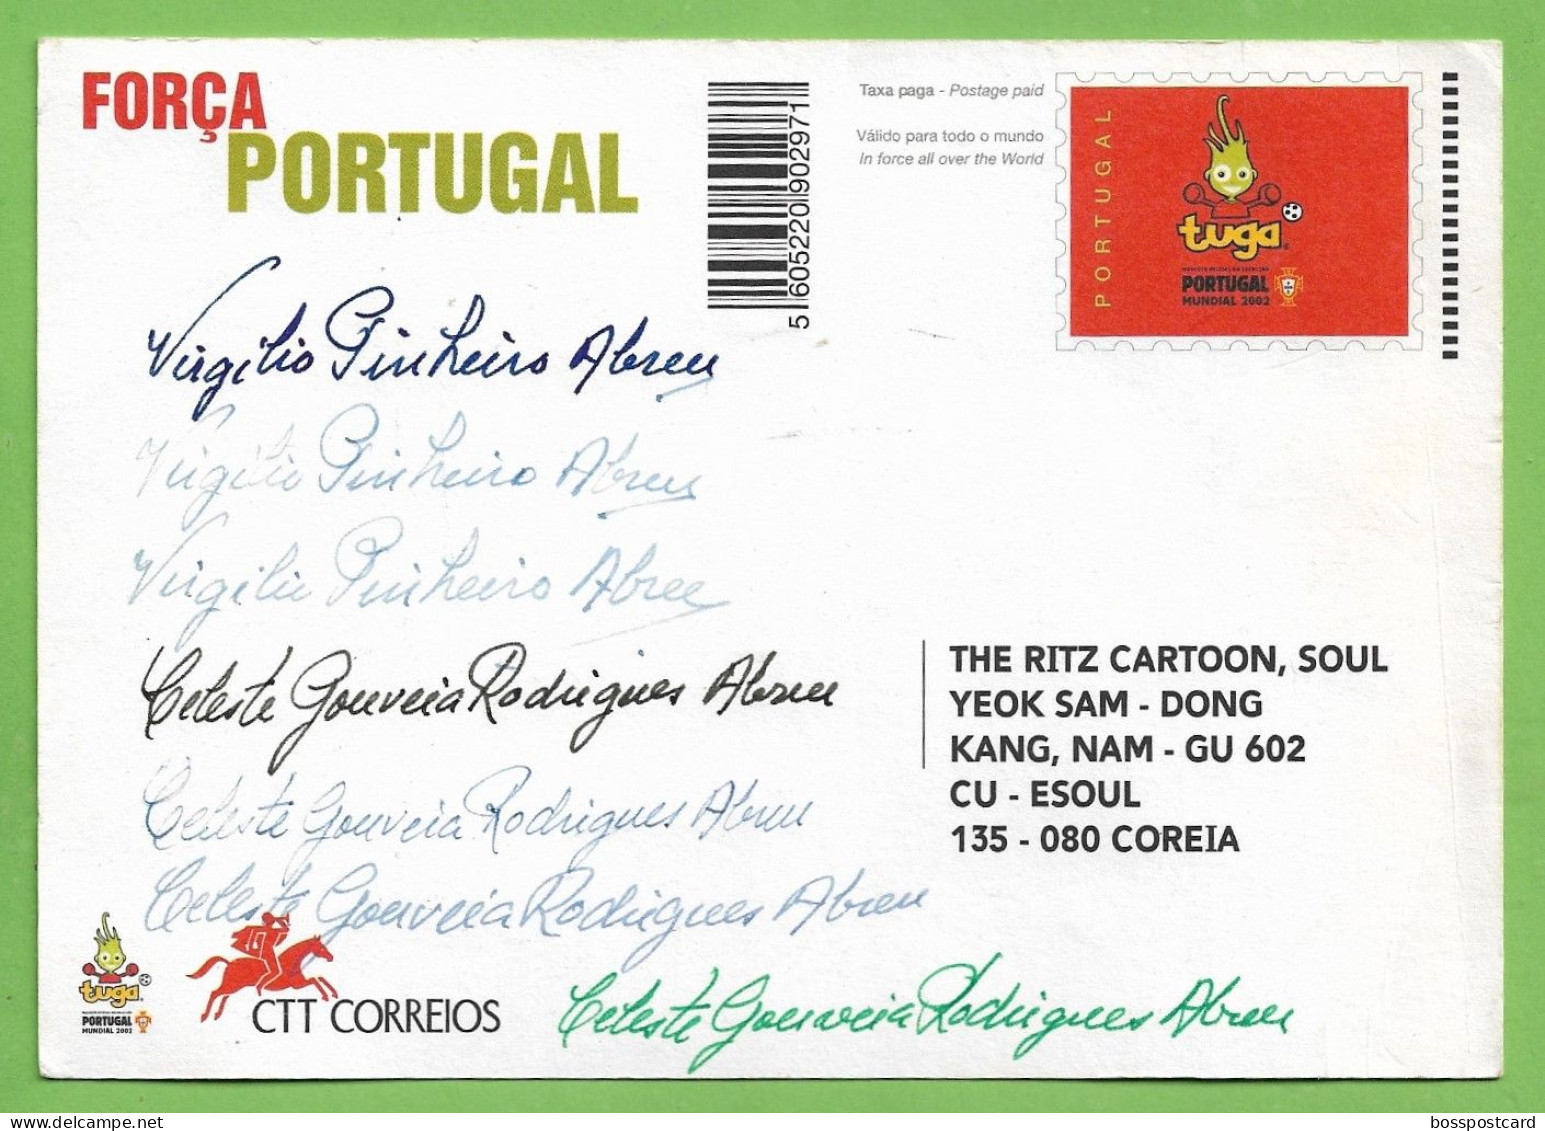 Lisboa - Selecção Nacional De Futebol No Mundial De 2002 - Estádio - Football - Stadium - Portugal - Voetbal